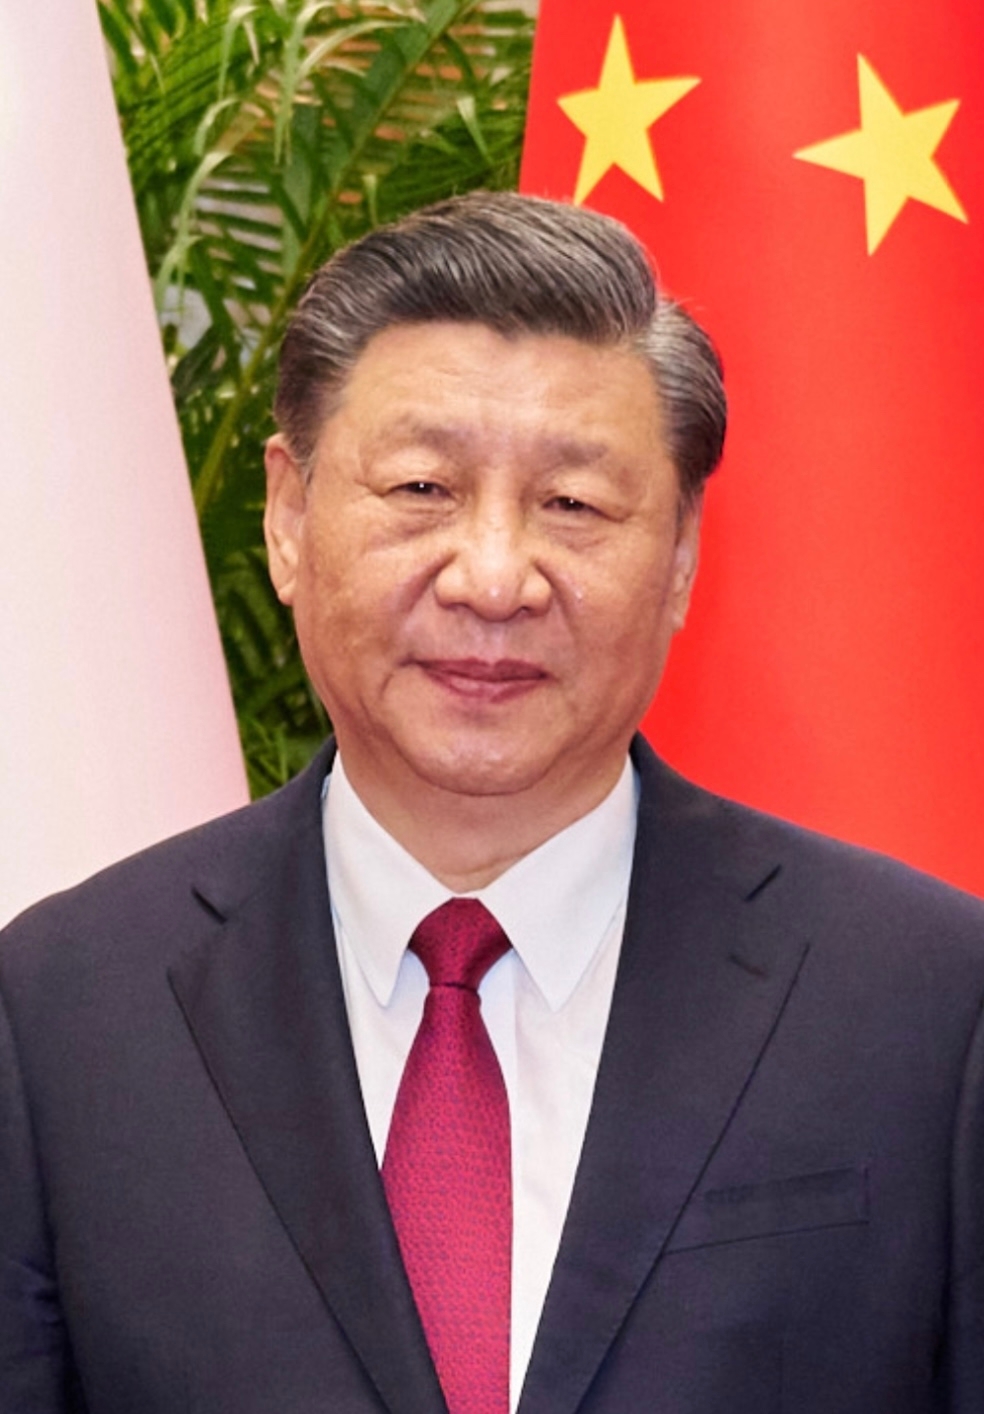 auteur Xi Jinping de la citation Il est vrai que certaines personnes ont des doutes sur la Chine-U.K. coopération. Ce que je veux souligner, c'est que dans le monde d'aujourd'hui, aucun pays ne peut se permettre de poursuivre le développement avec sa porte fermée. Il faut ouvrir la porte, accueillir chaleureusement des amis et leur être accueillant.